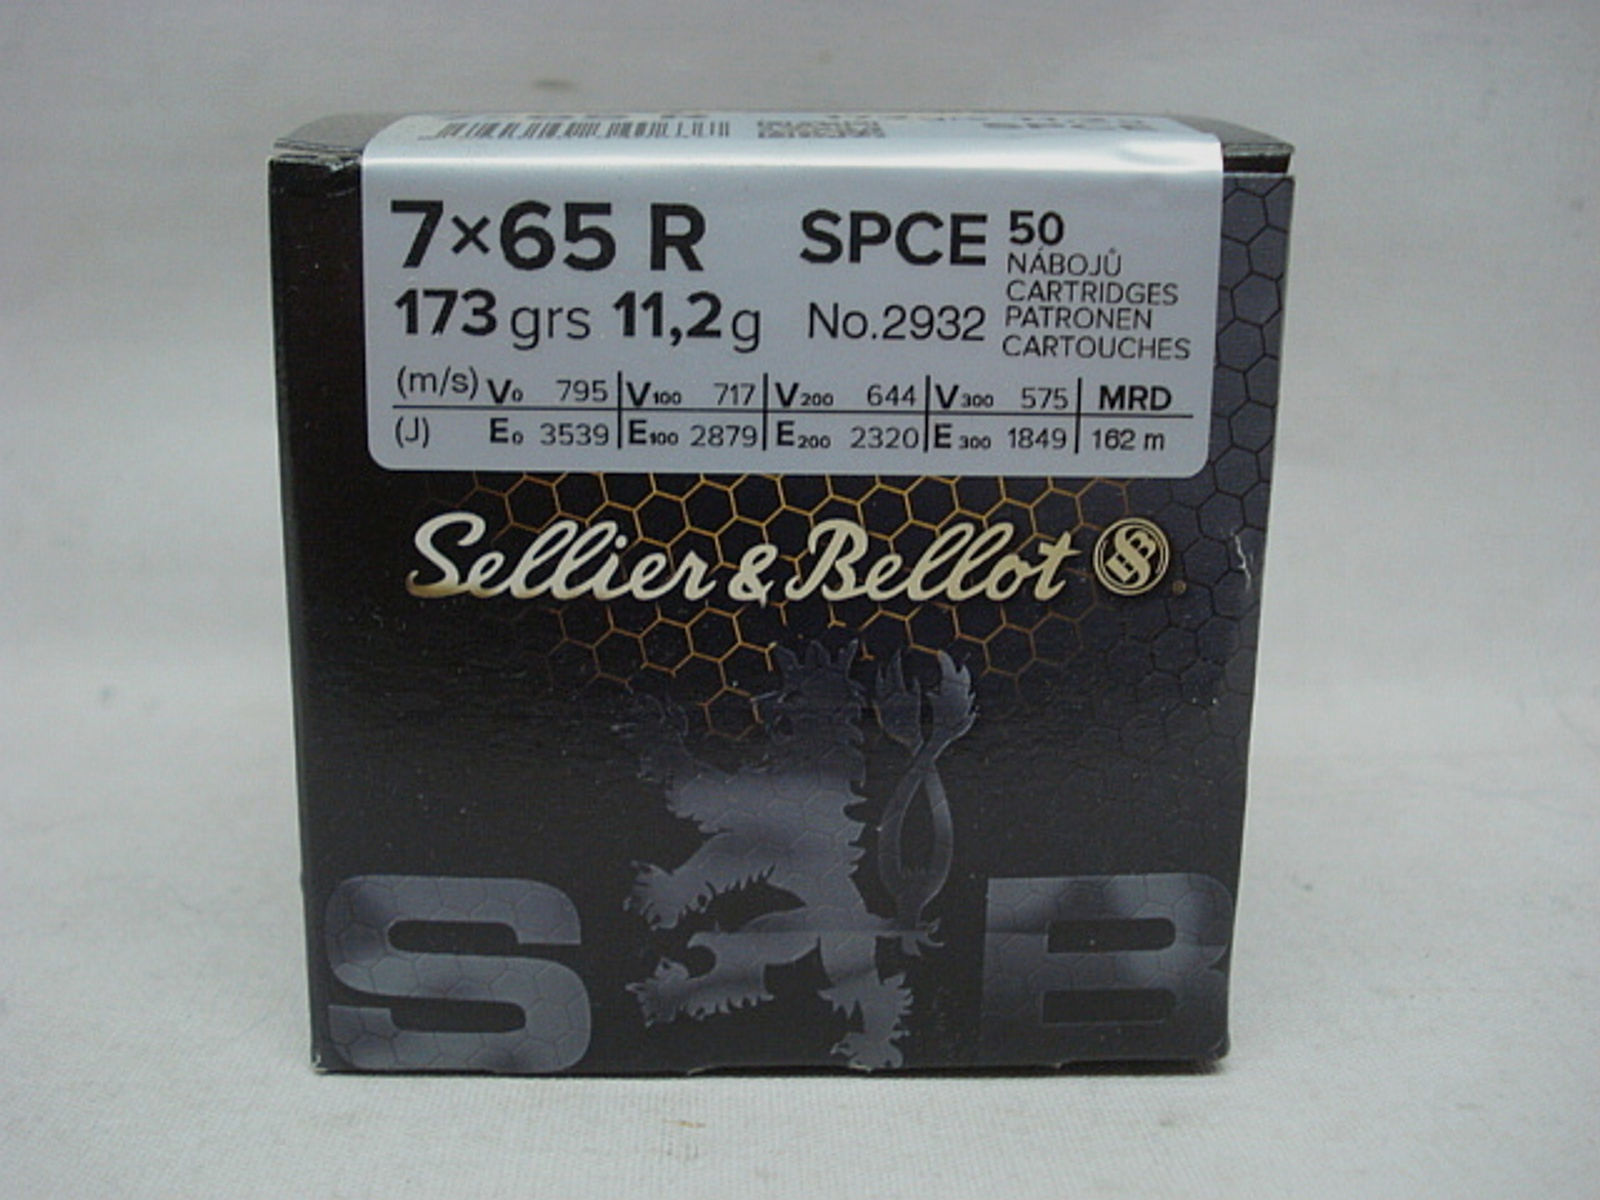 7x65R SPCE-Target - 11,2g/173gr (a50)